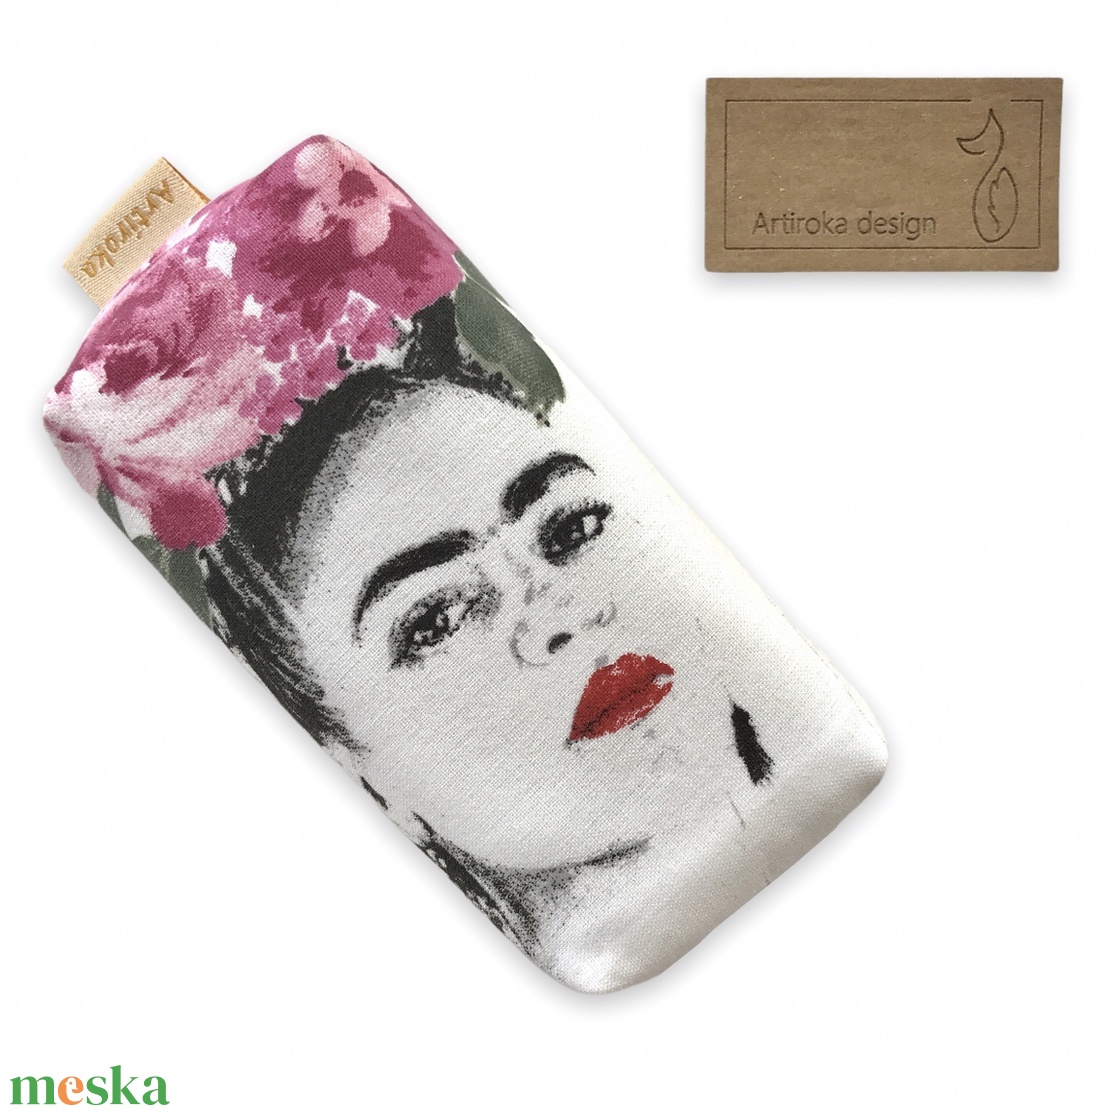 Frida Kahlo mintás, bélelt papírzsebkendő tartó  - Artiroka design - táska & tok - pénztárca & más tok - zsebkendőtartó tok - Meska.hu